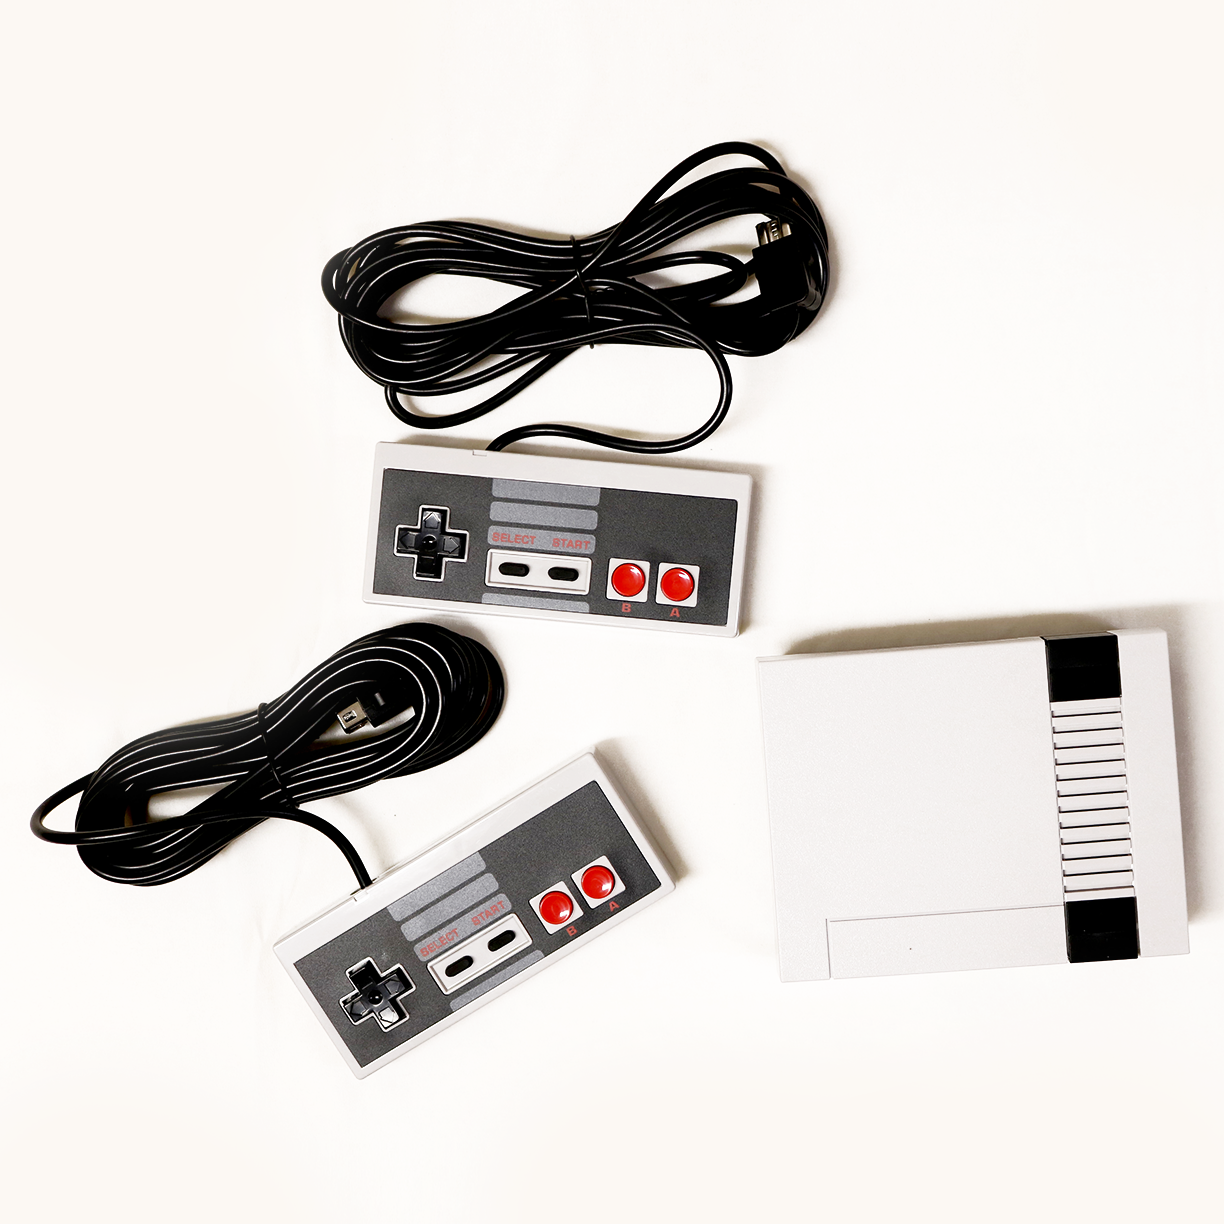 NES classic